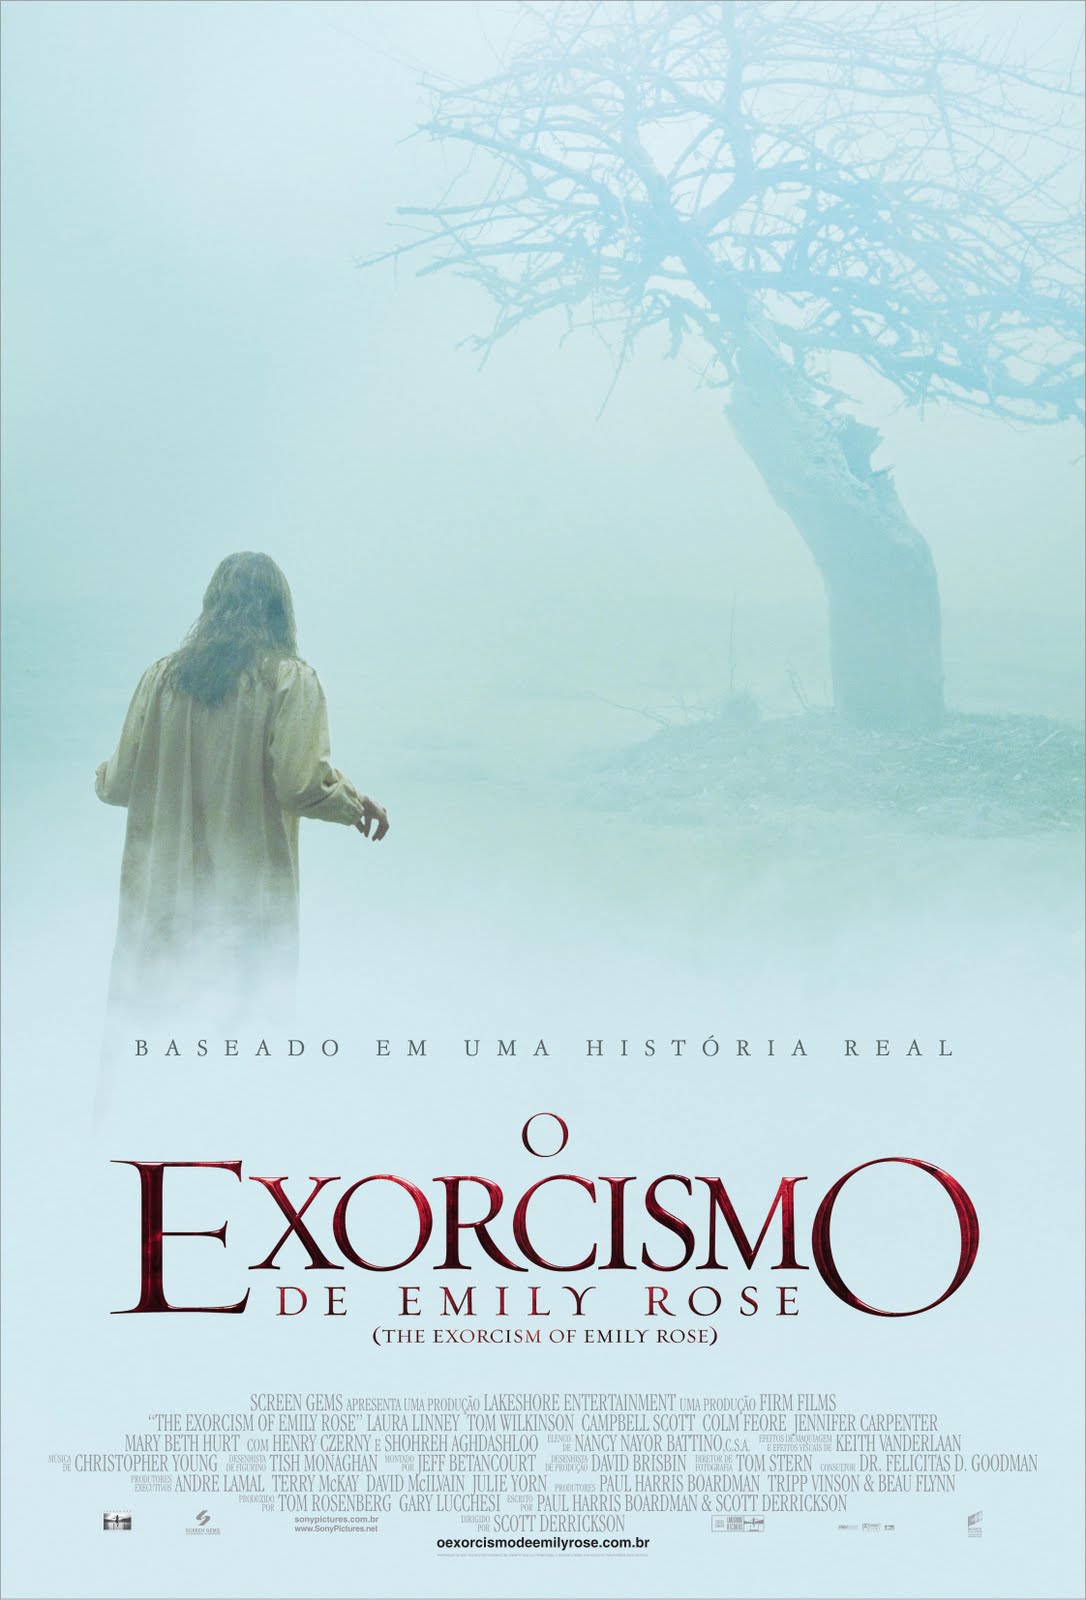 Exorcistas do Vaticano - Filme 2015 - AdoroCinema